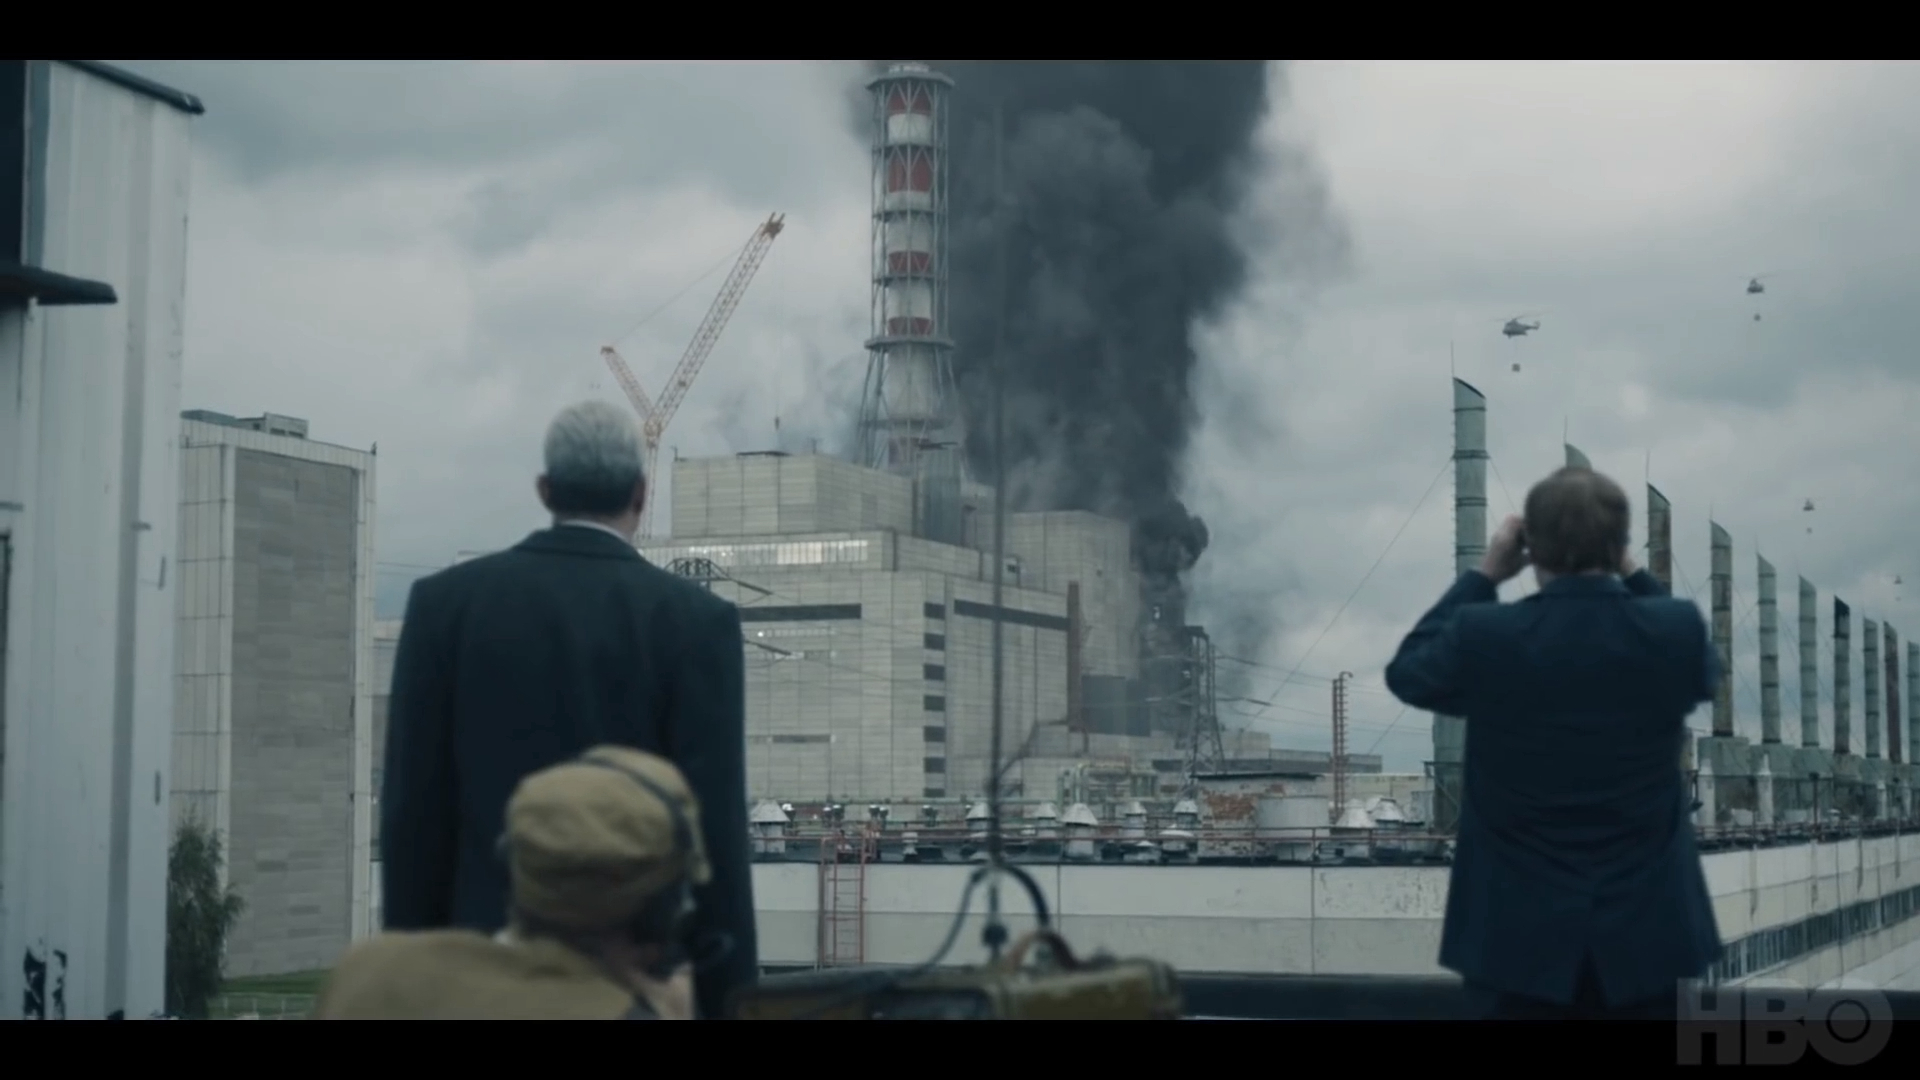 Thảm Họa Hạt Nhân Chernobyl